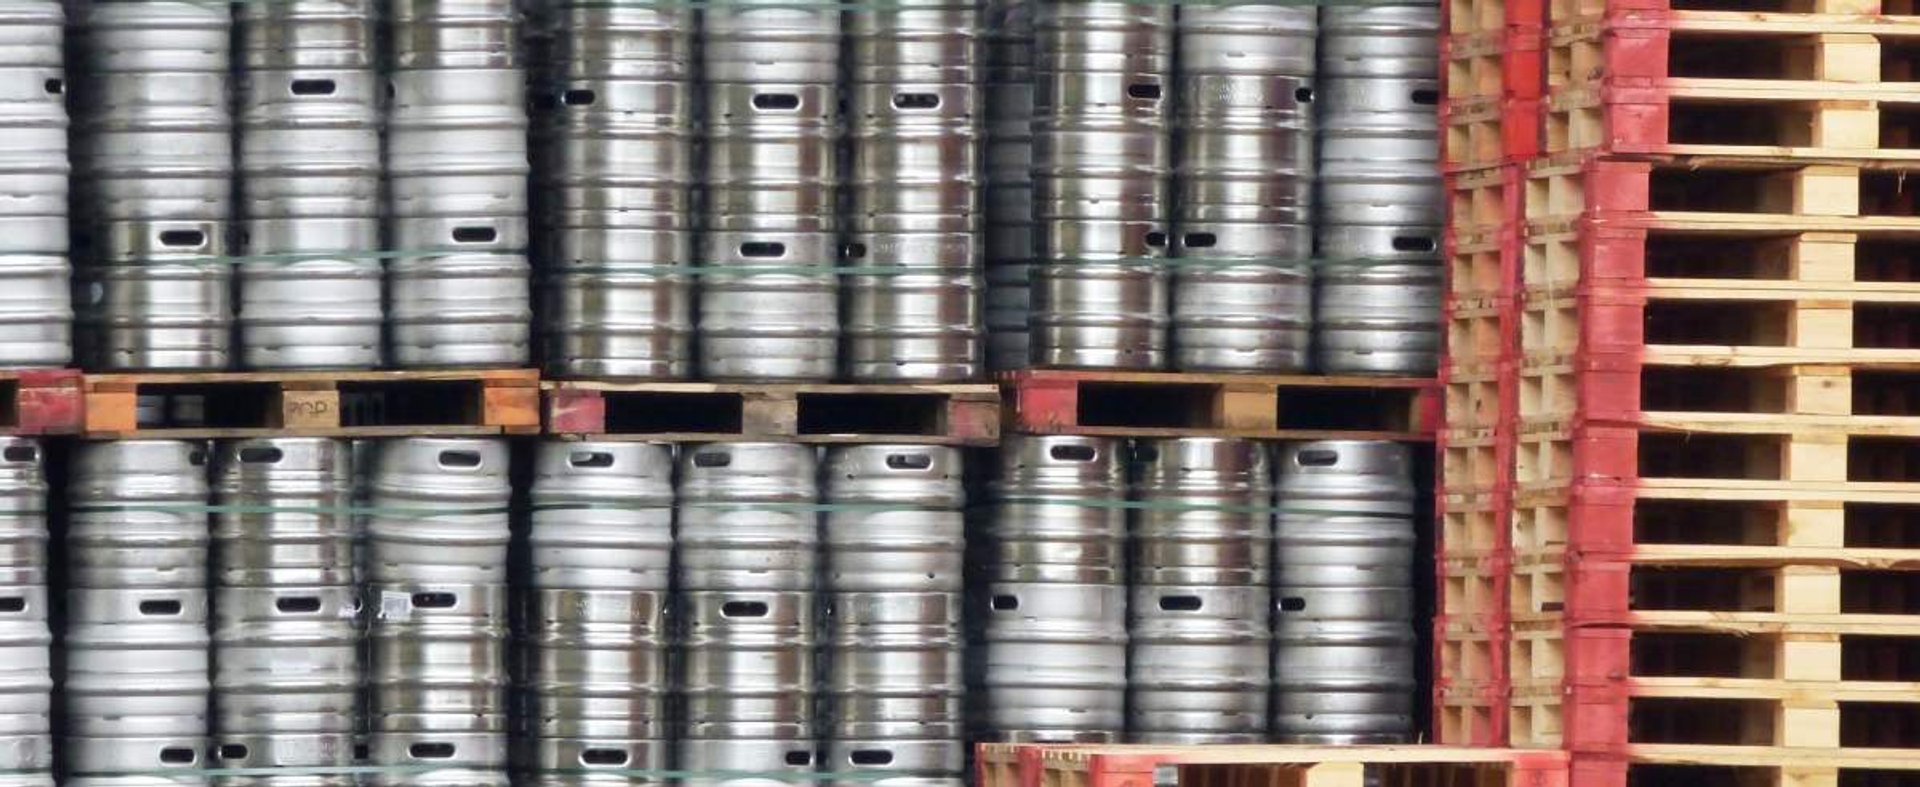 Miliony litrów piwa w Wielkiej Brytanii trafiło do ścieków